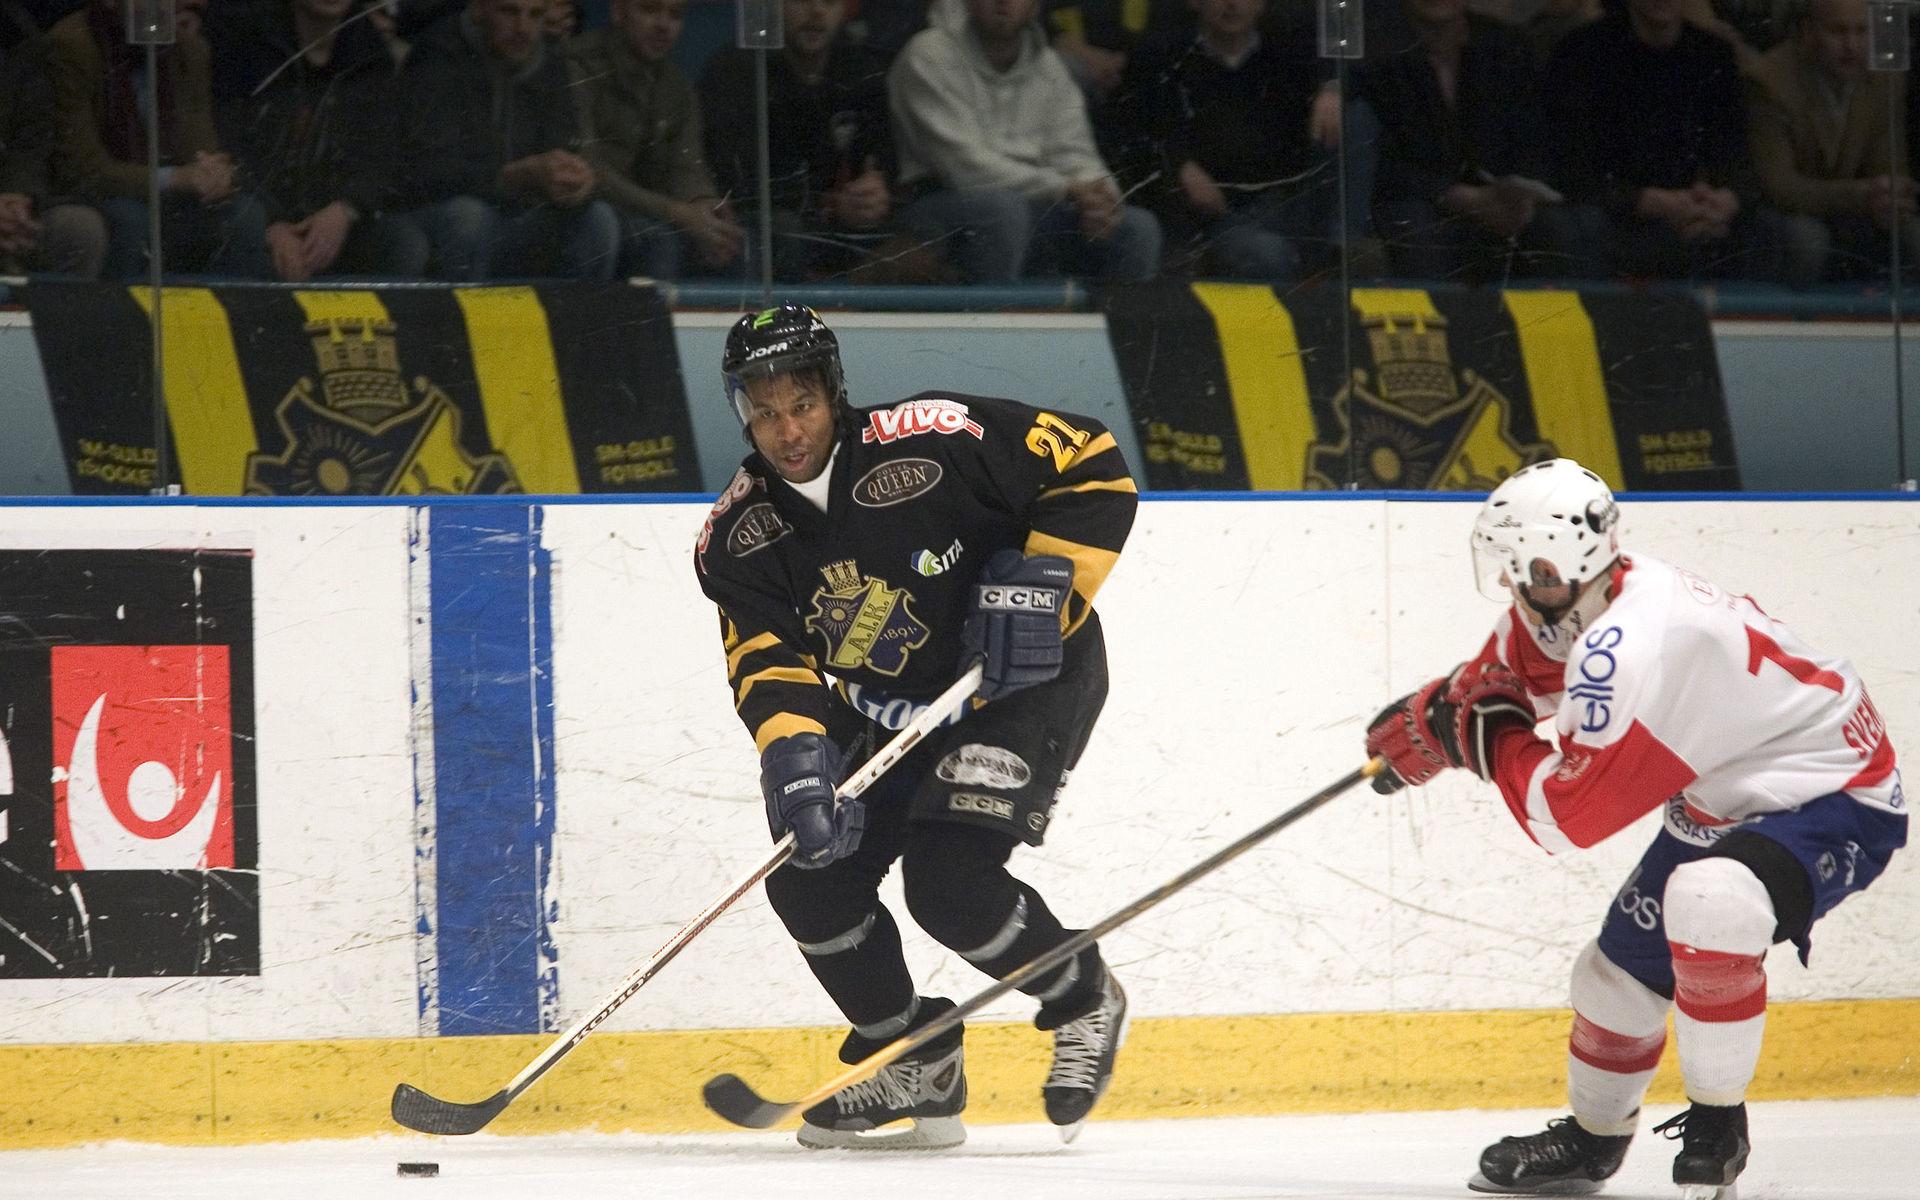 Kanadensaren har spelat nästan 700 matcher i NHL, men även fyra i AIK under lockout-säsongen 2004/2005.